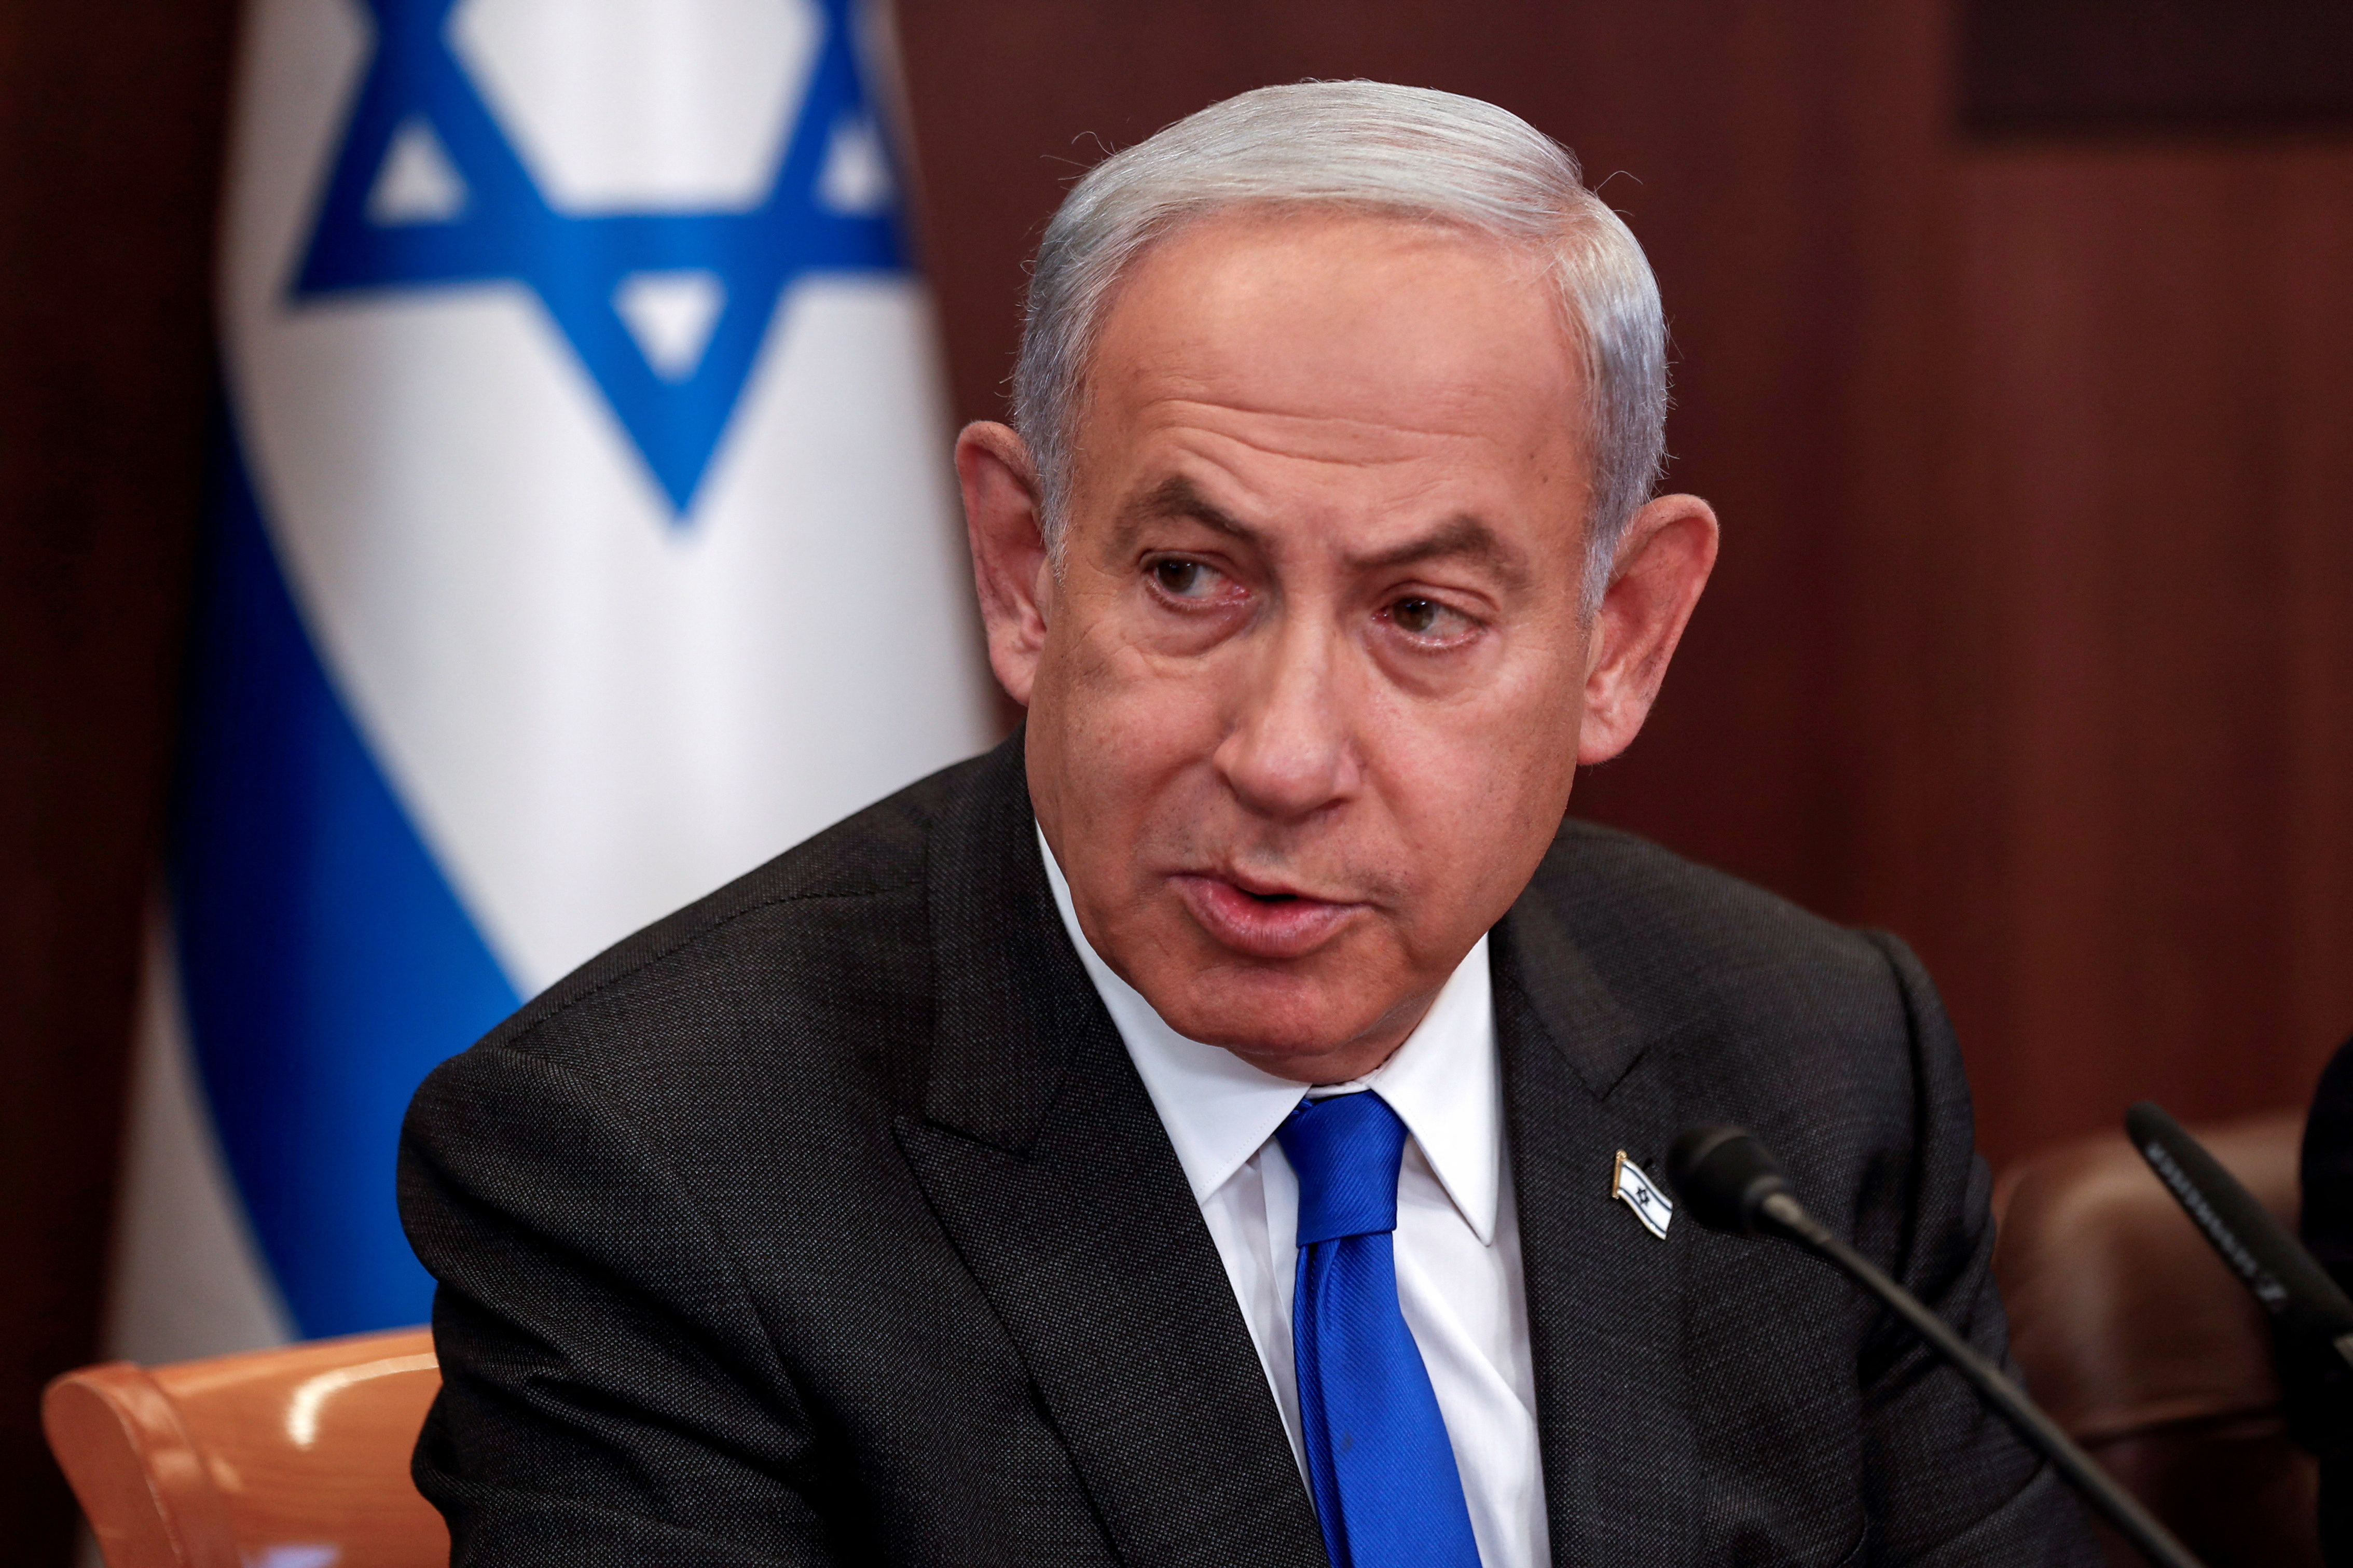 Israeli PM Benjamin Netanyahu